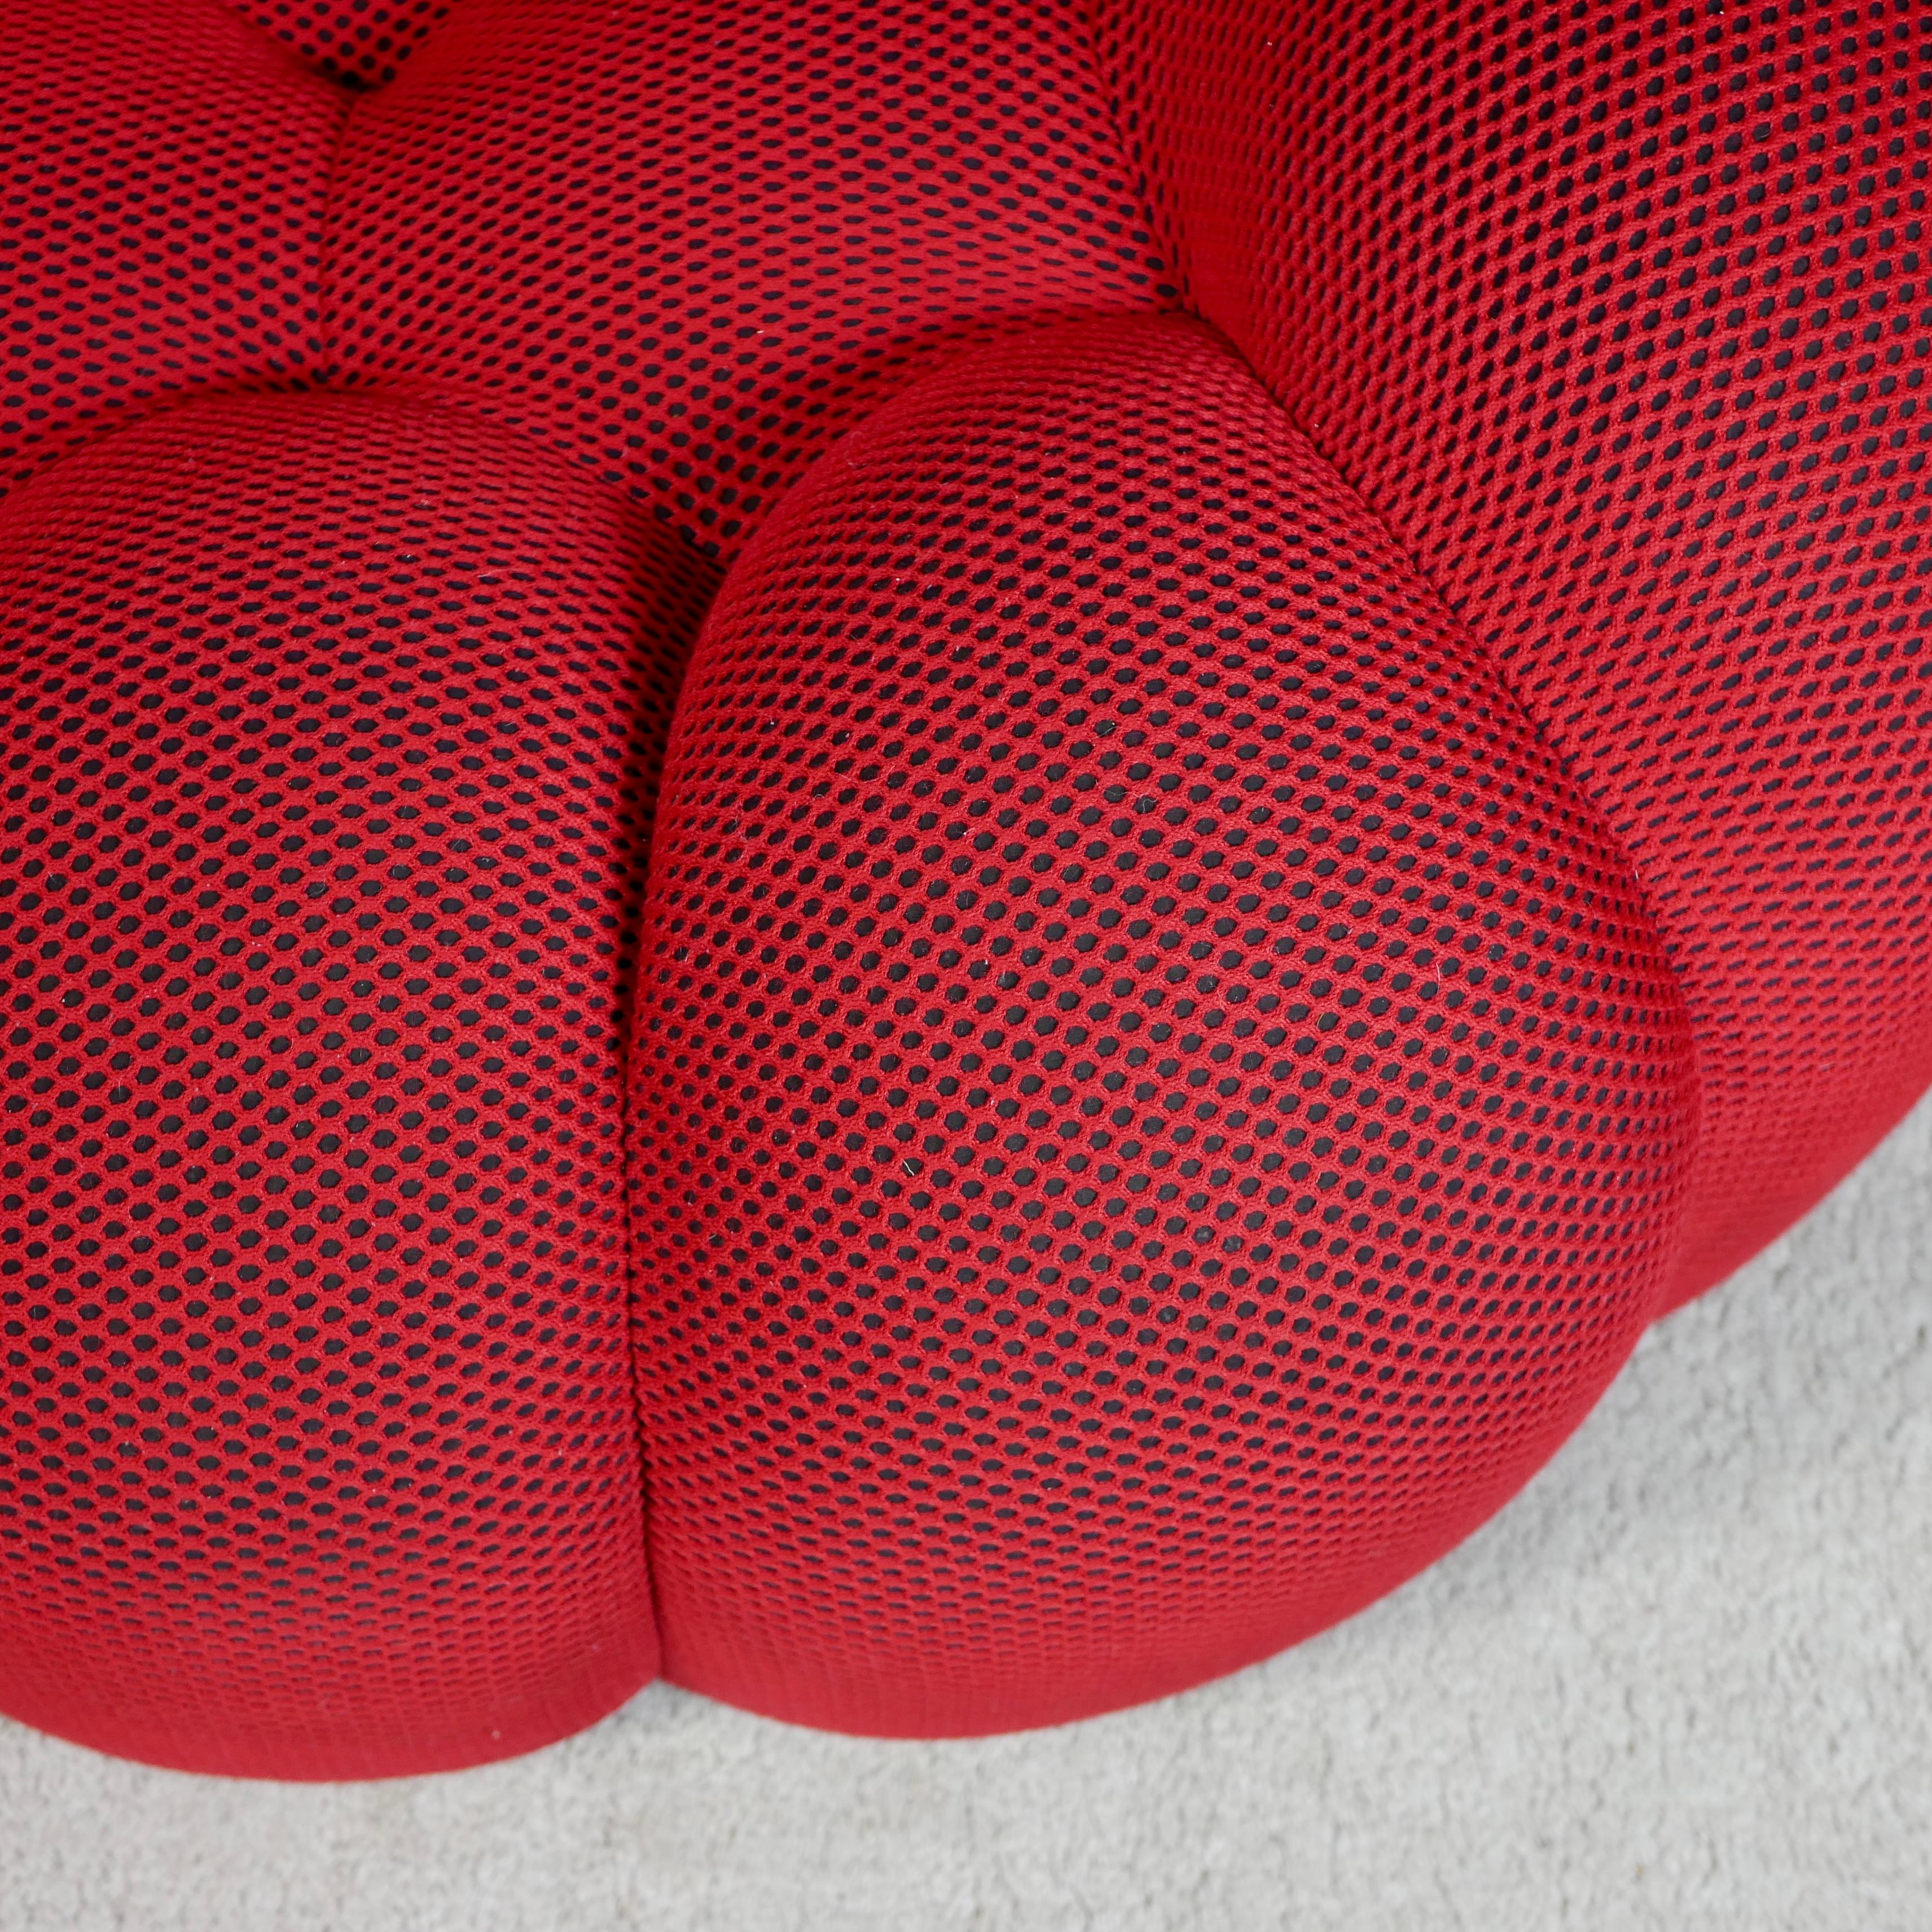 Bubble sofa Techno 3D fabric by Sacha Lakic for Roche Bobois, 2014 2